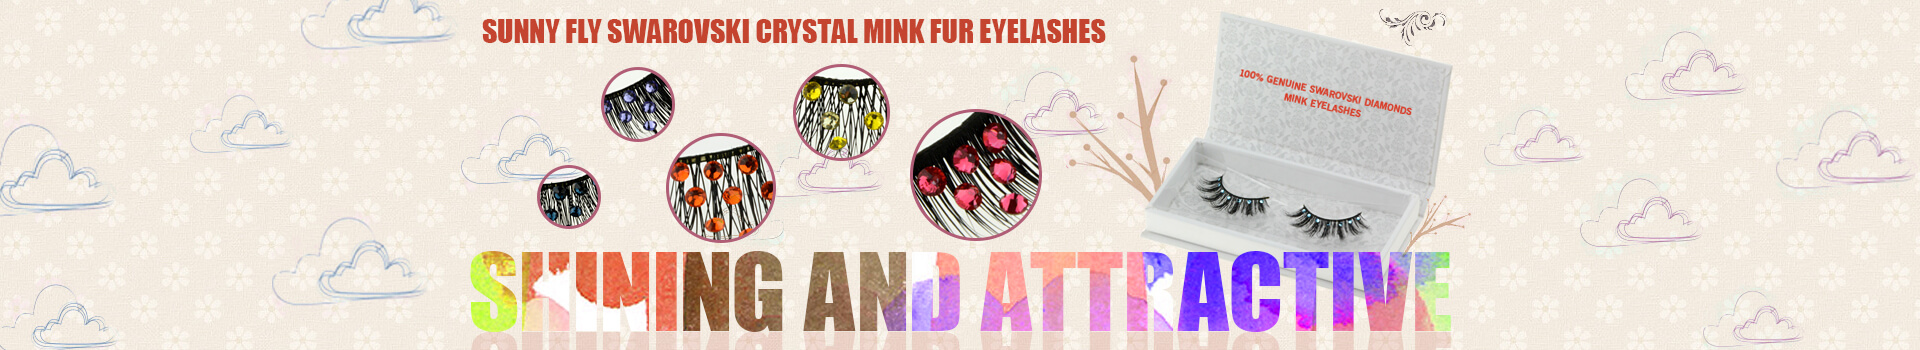 Swarovski Crystal Mink Fur Eyelashes MS20